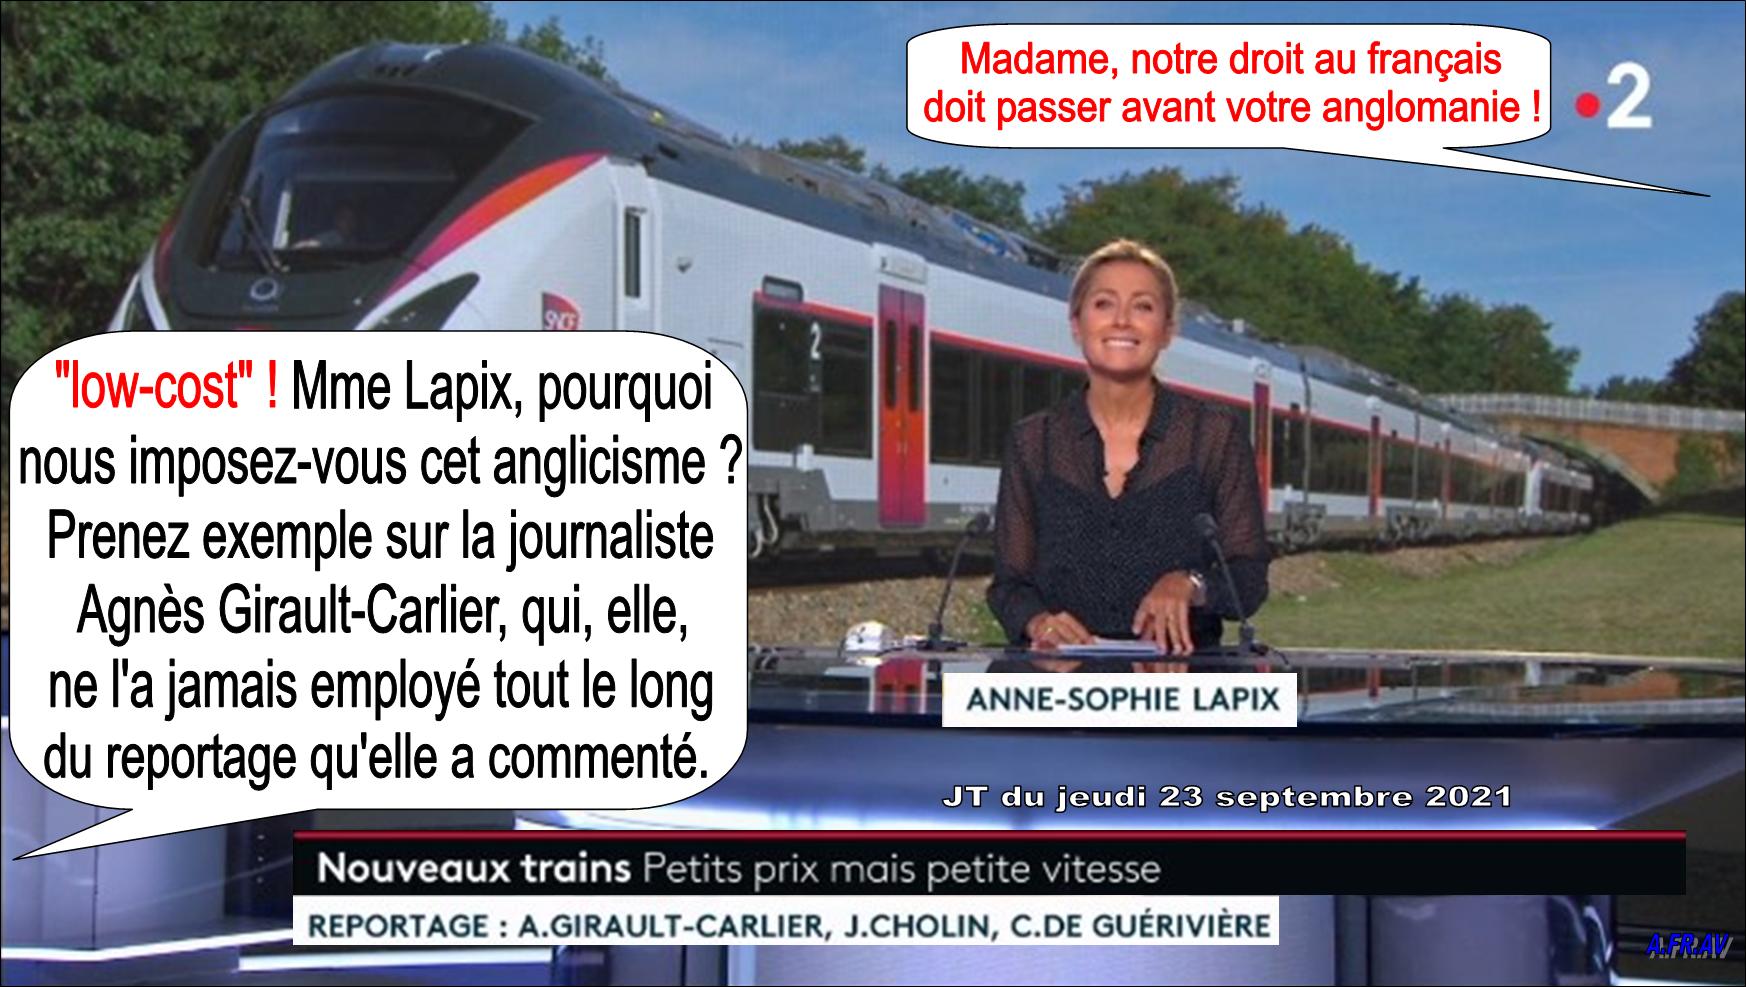 Anne-Sophie Lapix, Agnès Girault-Carlier, Julien Cholin, Nouveaux trains à prix réduits.